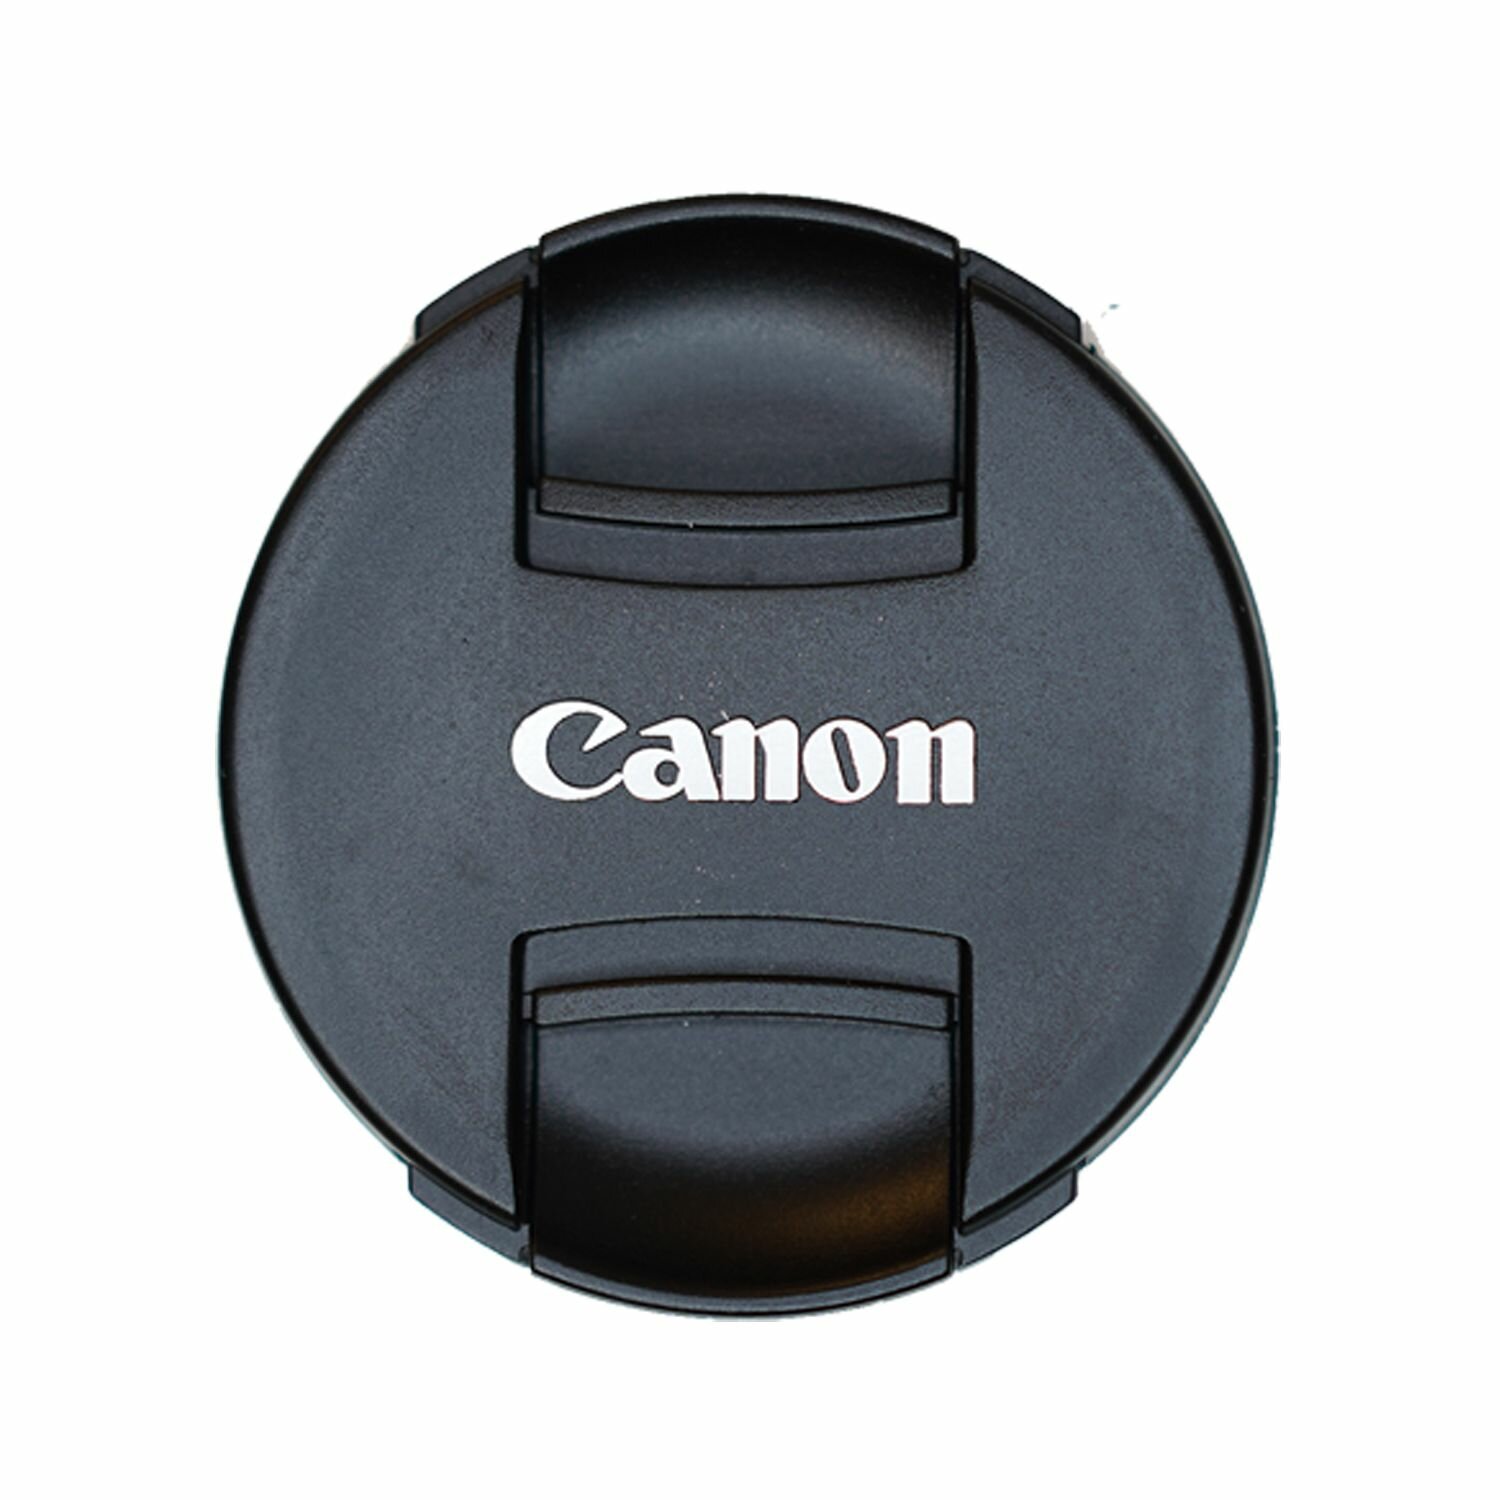 Защитная крышка 55 мм для объектива с надписью "Canon"